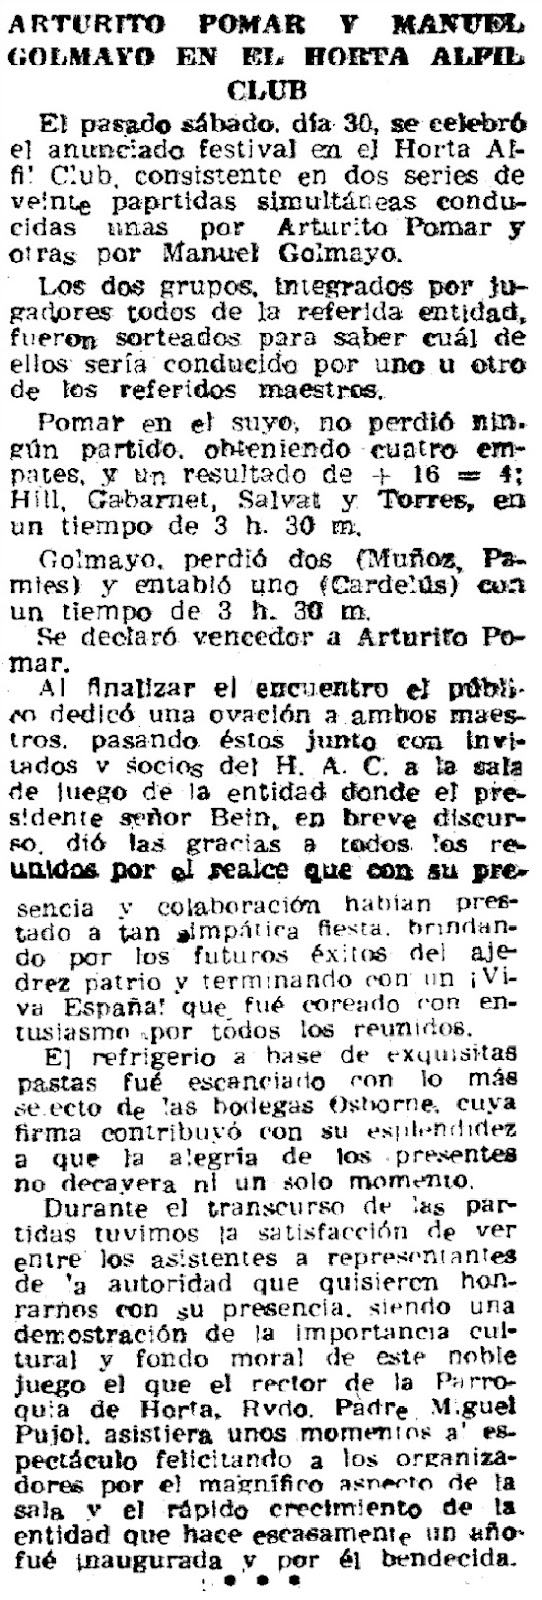 Simultáneas de ajedrez a cargo de Manuel Golmayo y Arturito Pomar en 1946